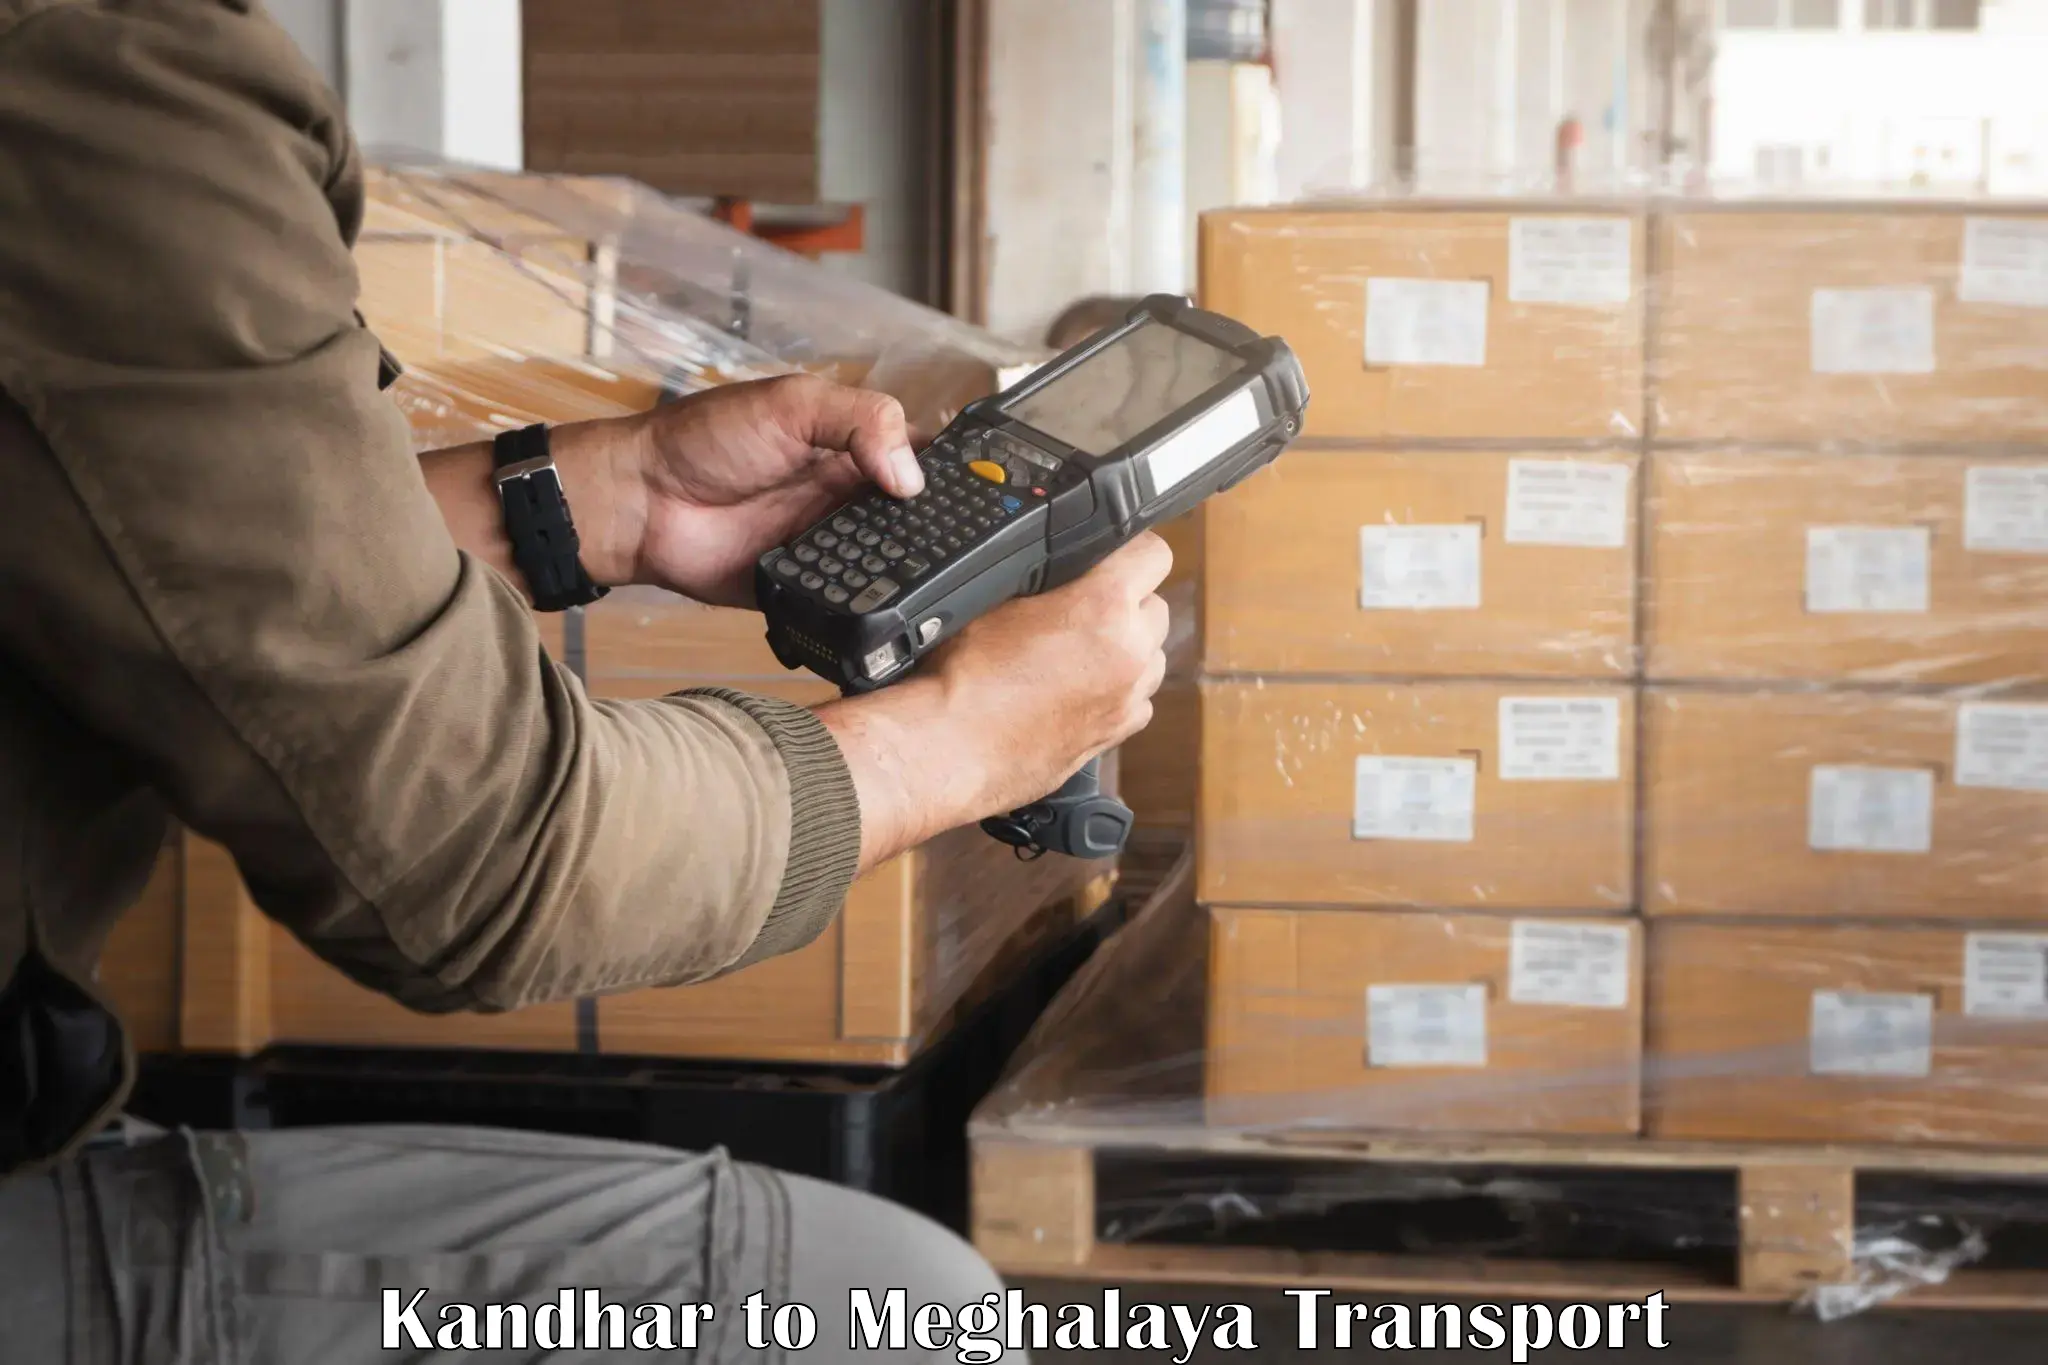 Nationwide transport services Kandhar to Phulbari